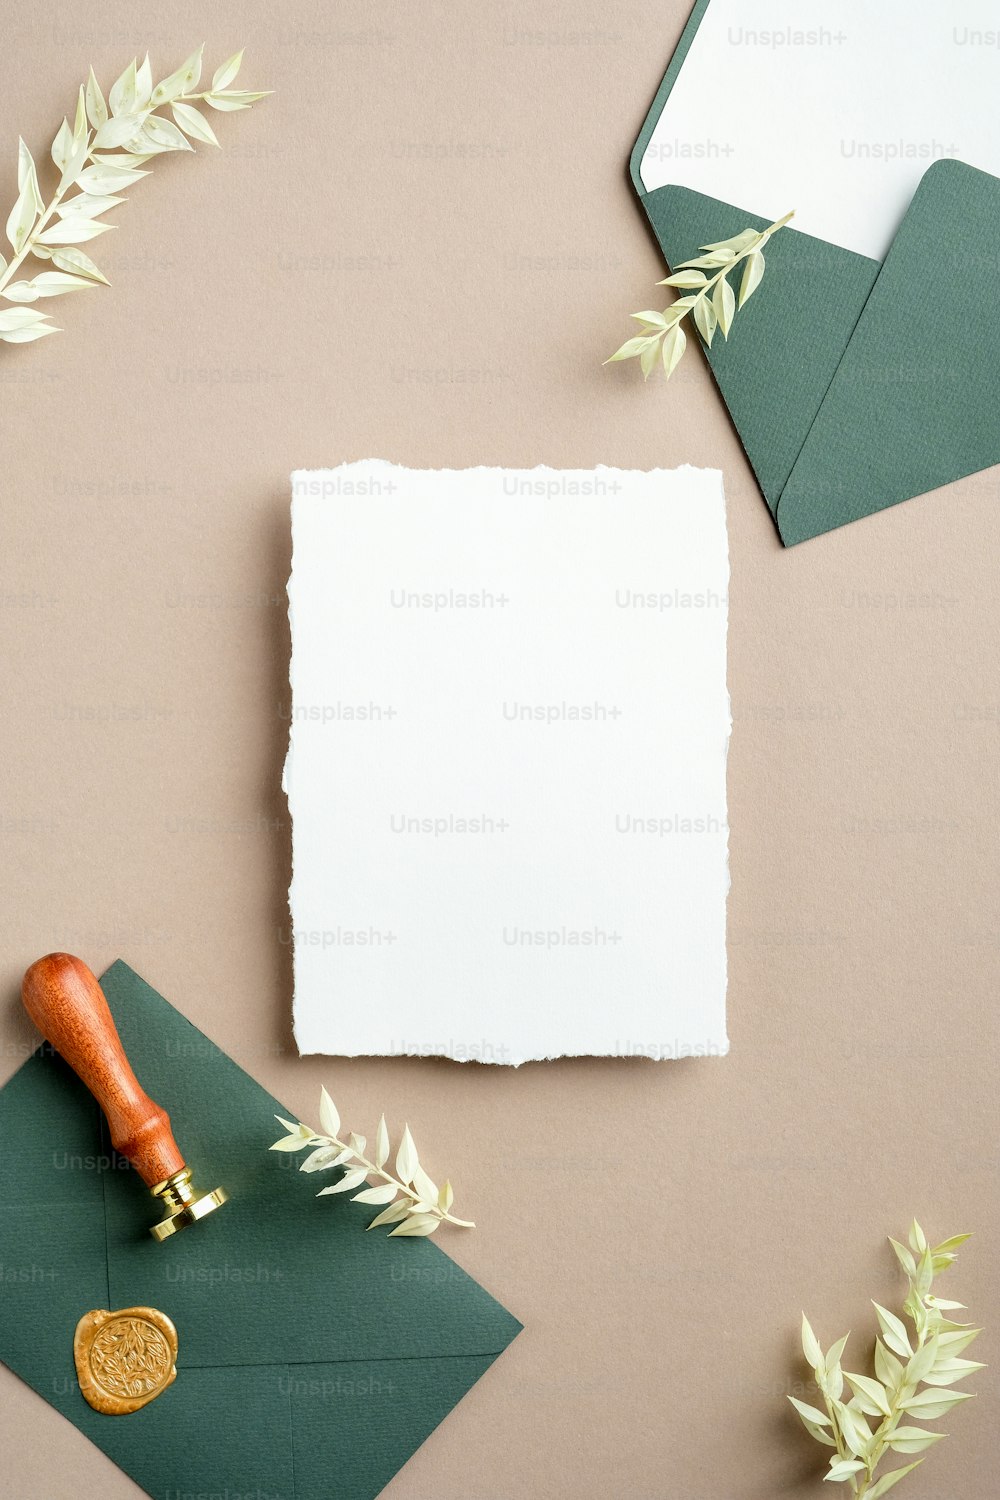 Maqueta de tarjeta de invitación de boda con detalles de boda y flores secas sobre fondo beige pastel. Plano, vista superior.